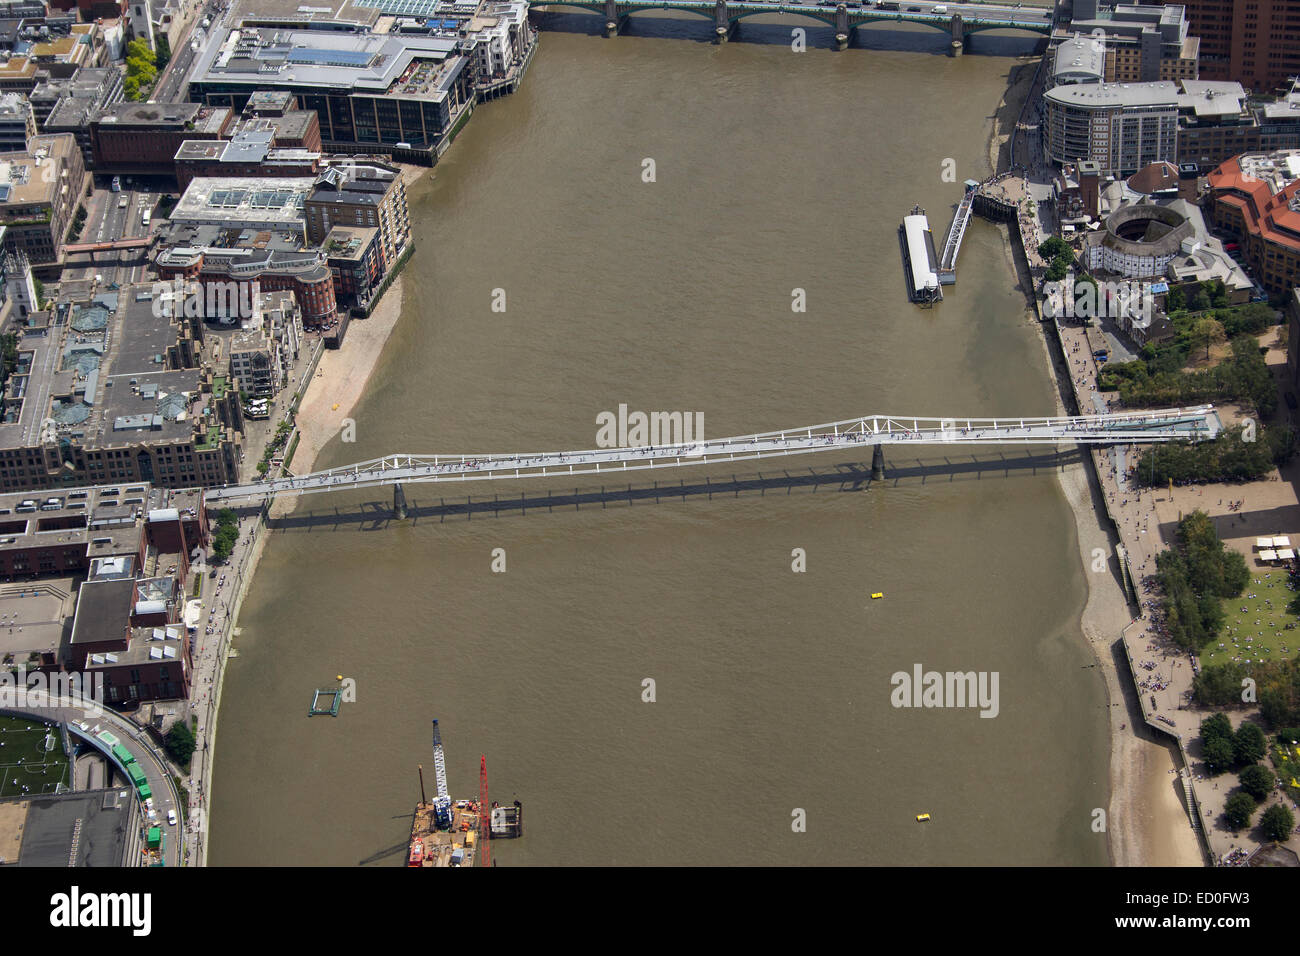 Regno Unito, Londra, vista aerea del Millennium Bridge Foto Stock